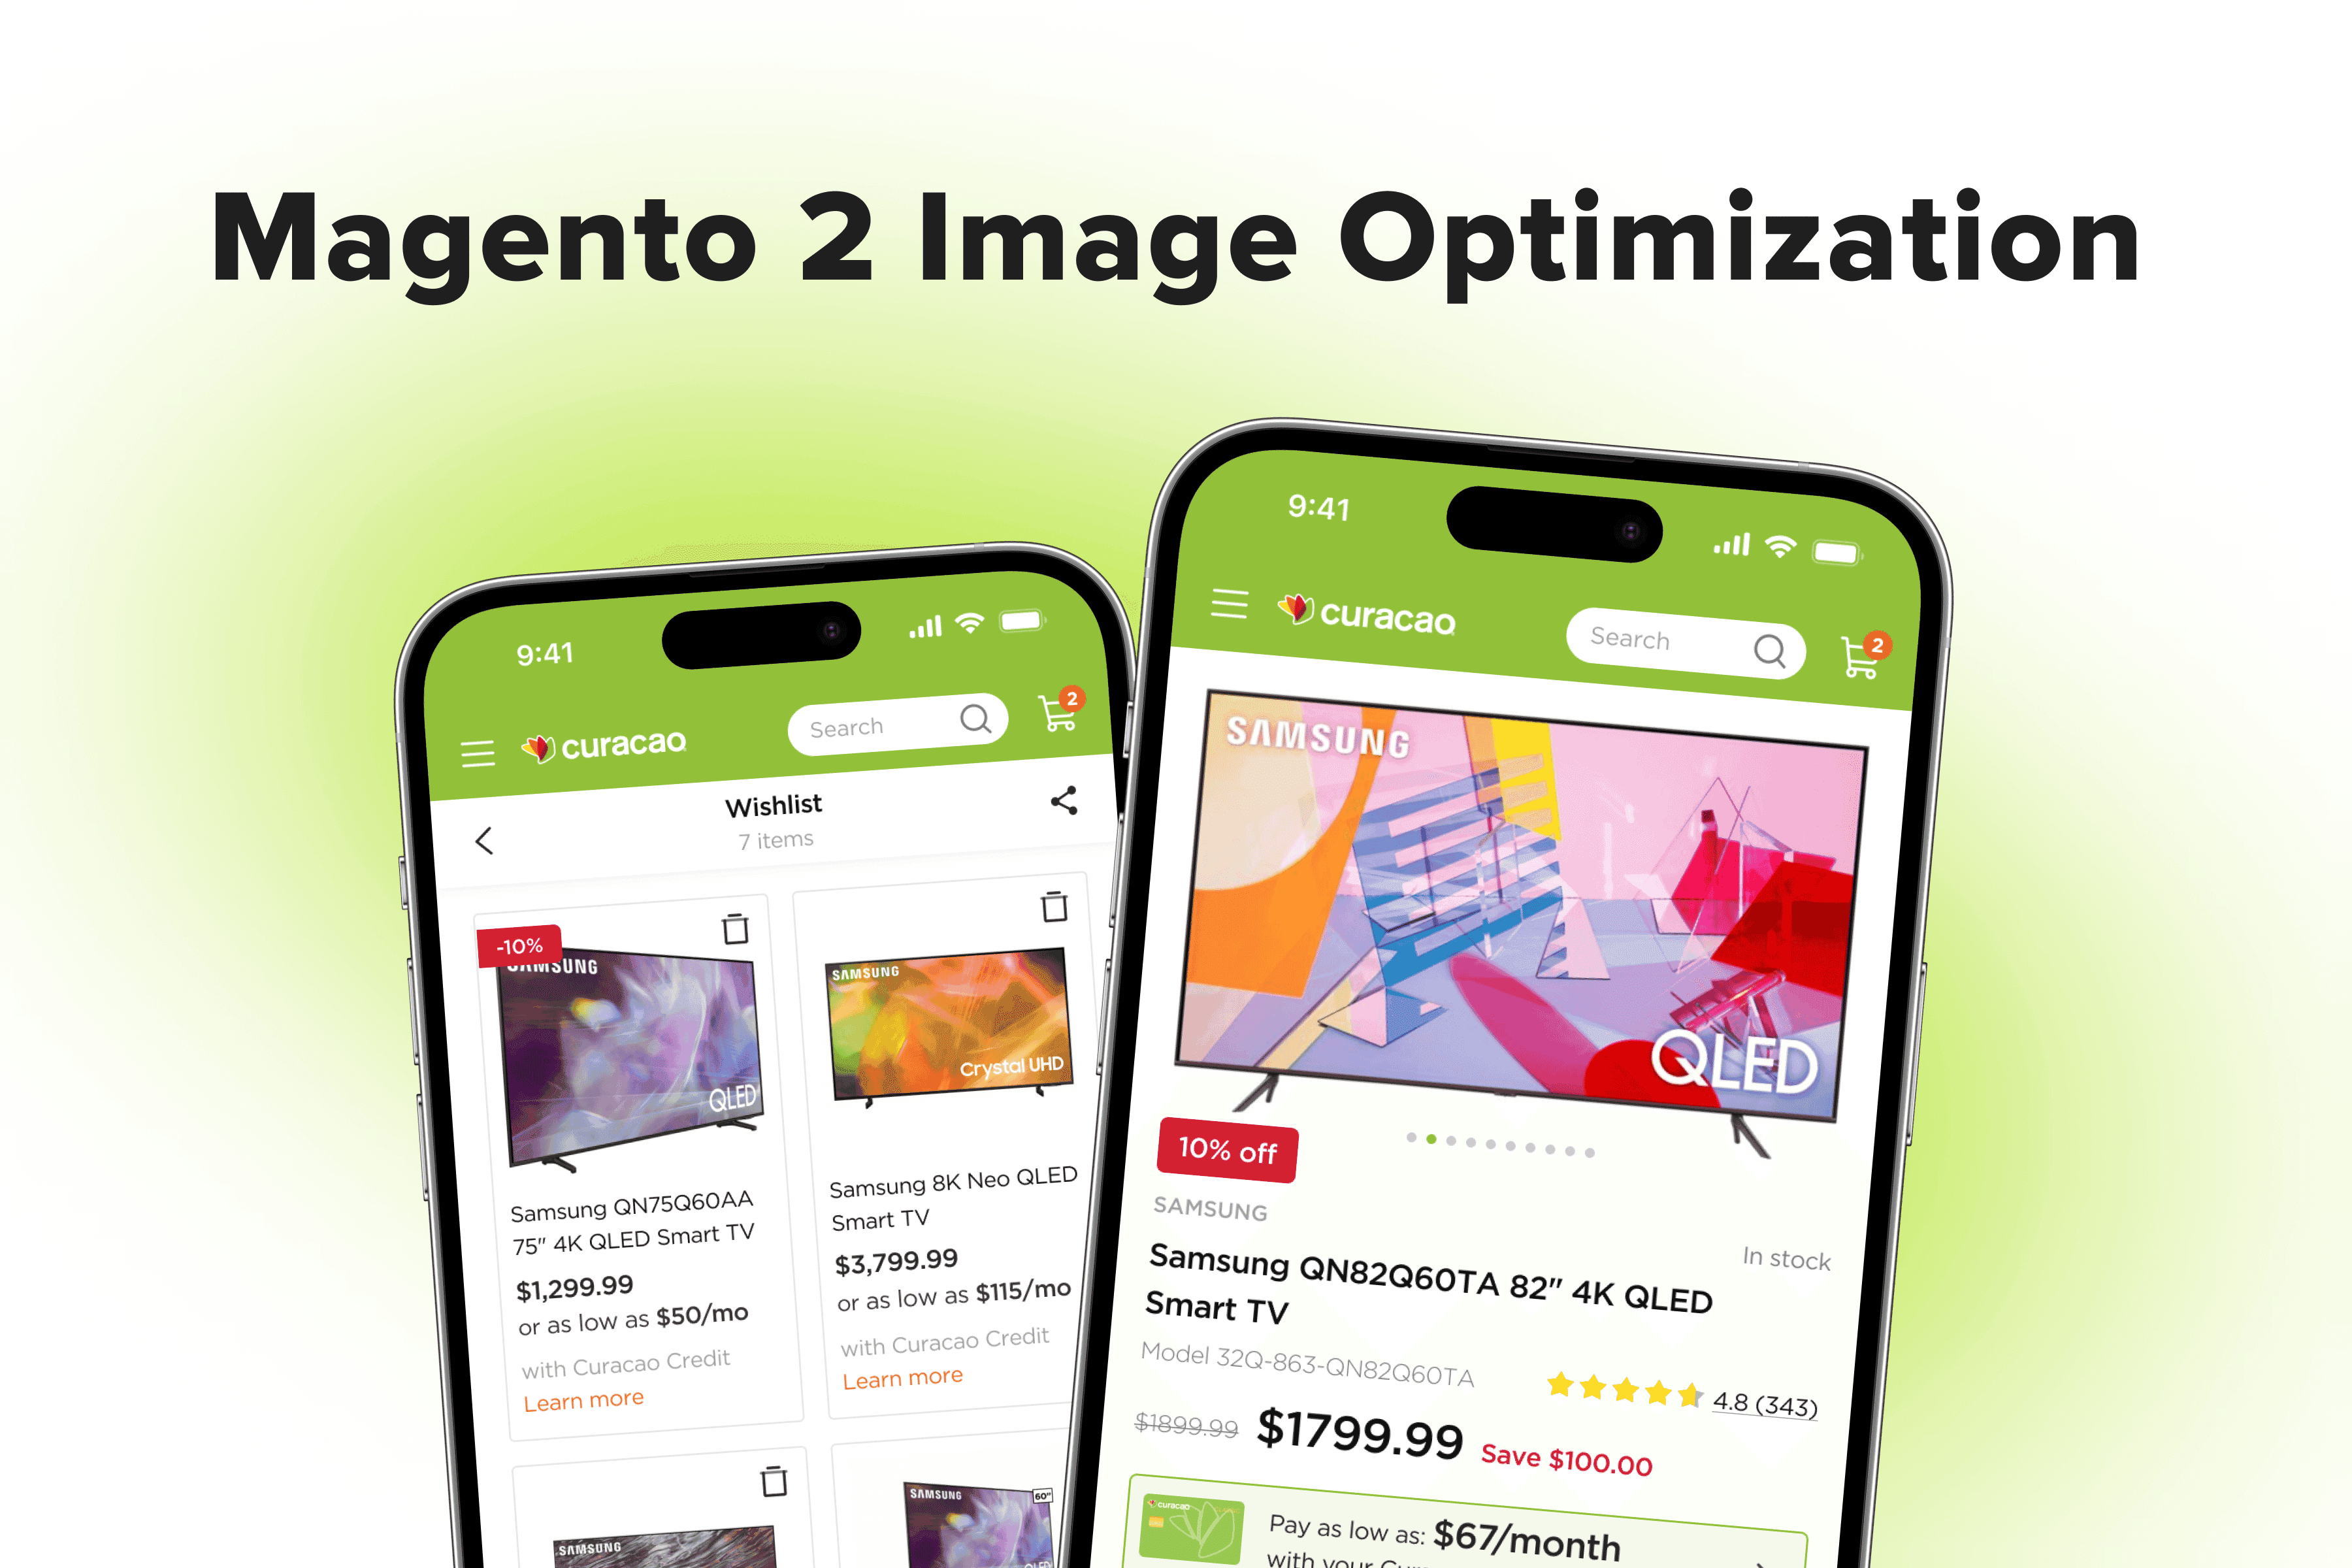 Magento Image Optimization